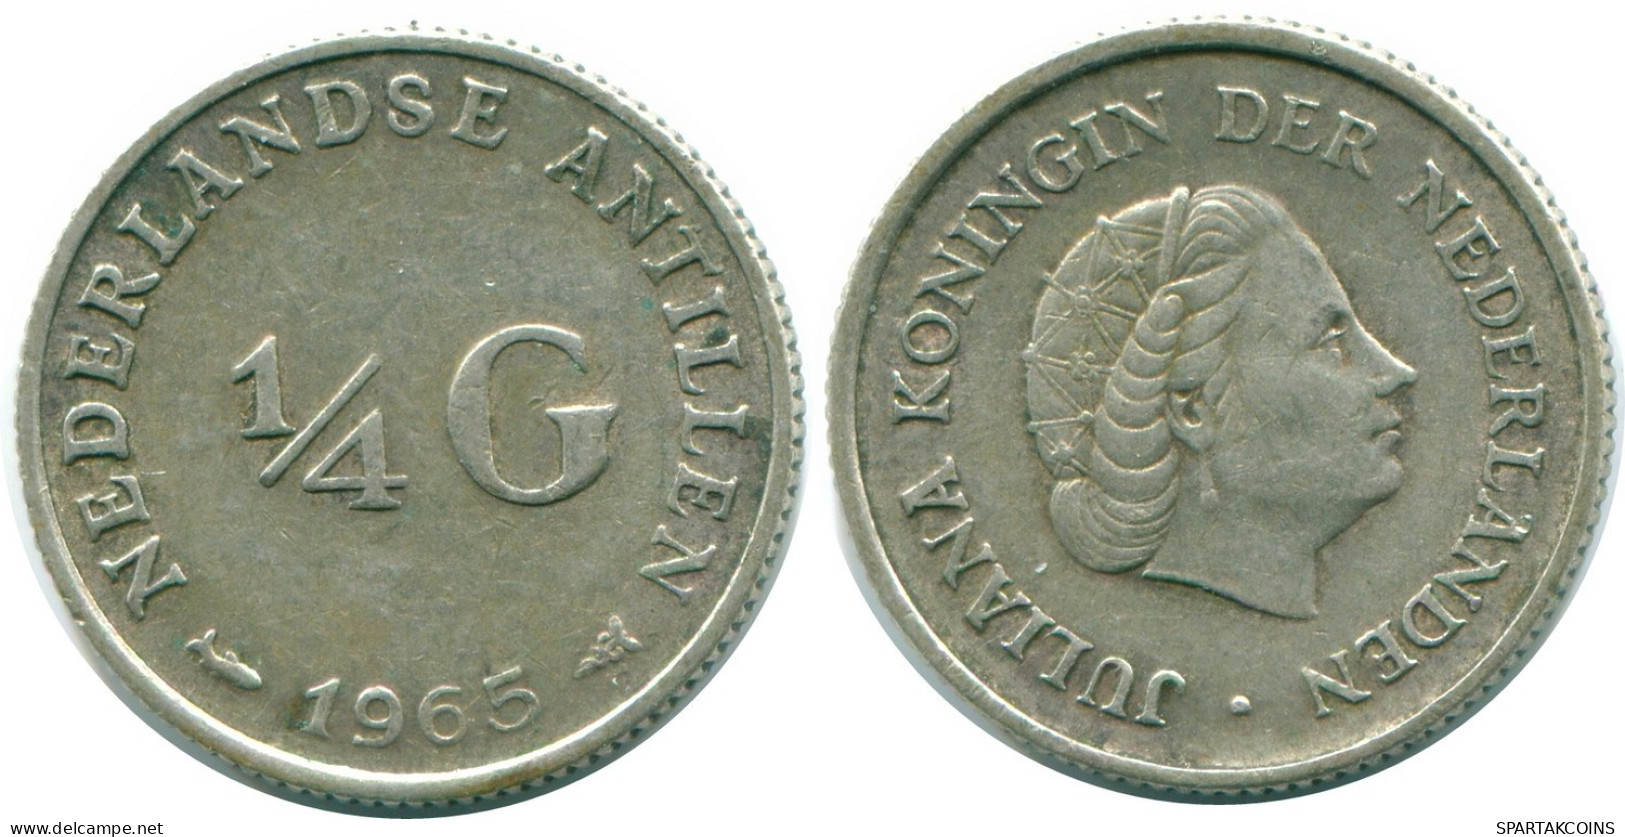 1/4 GULDEN 1965 NIEDERLÄNDISCHE ANTILLEN SILBER Koloniale Münze #NL11374.4.D.A - Antille Olandesi